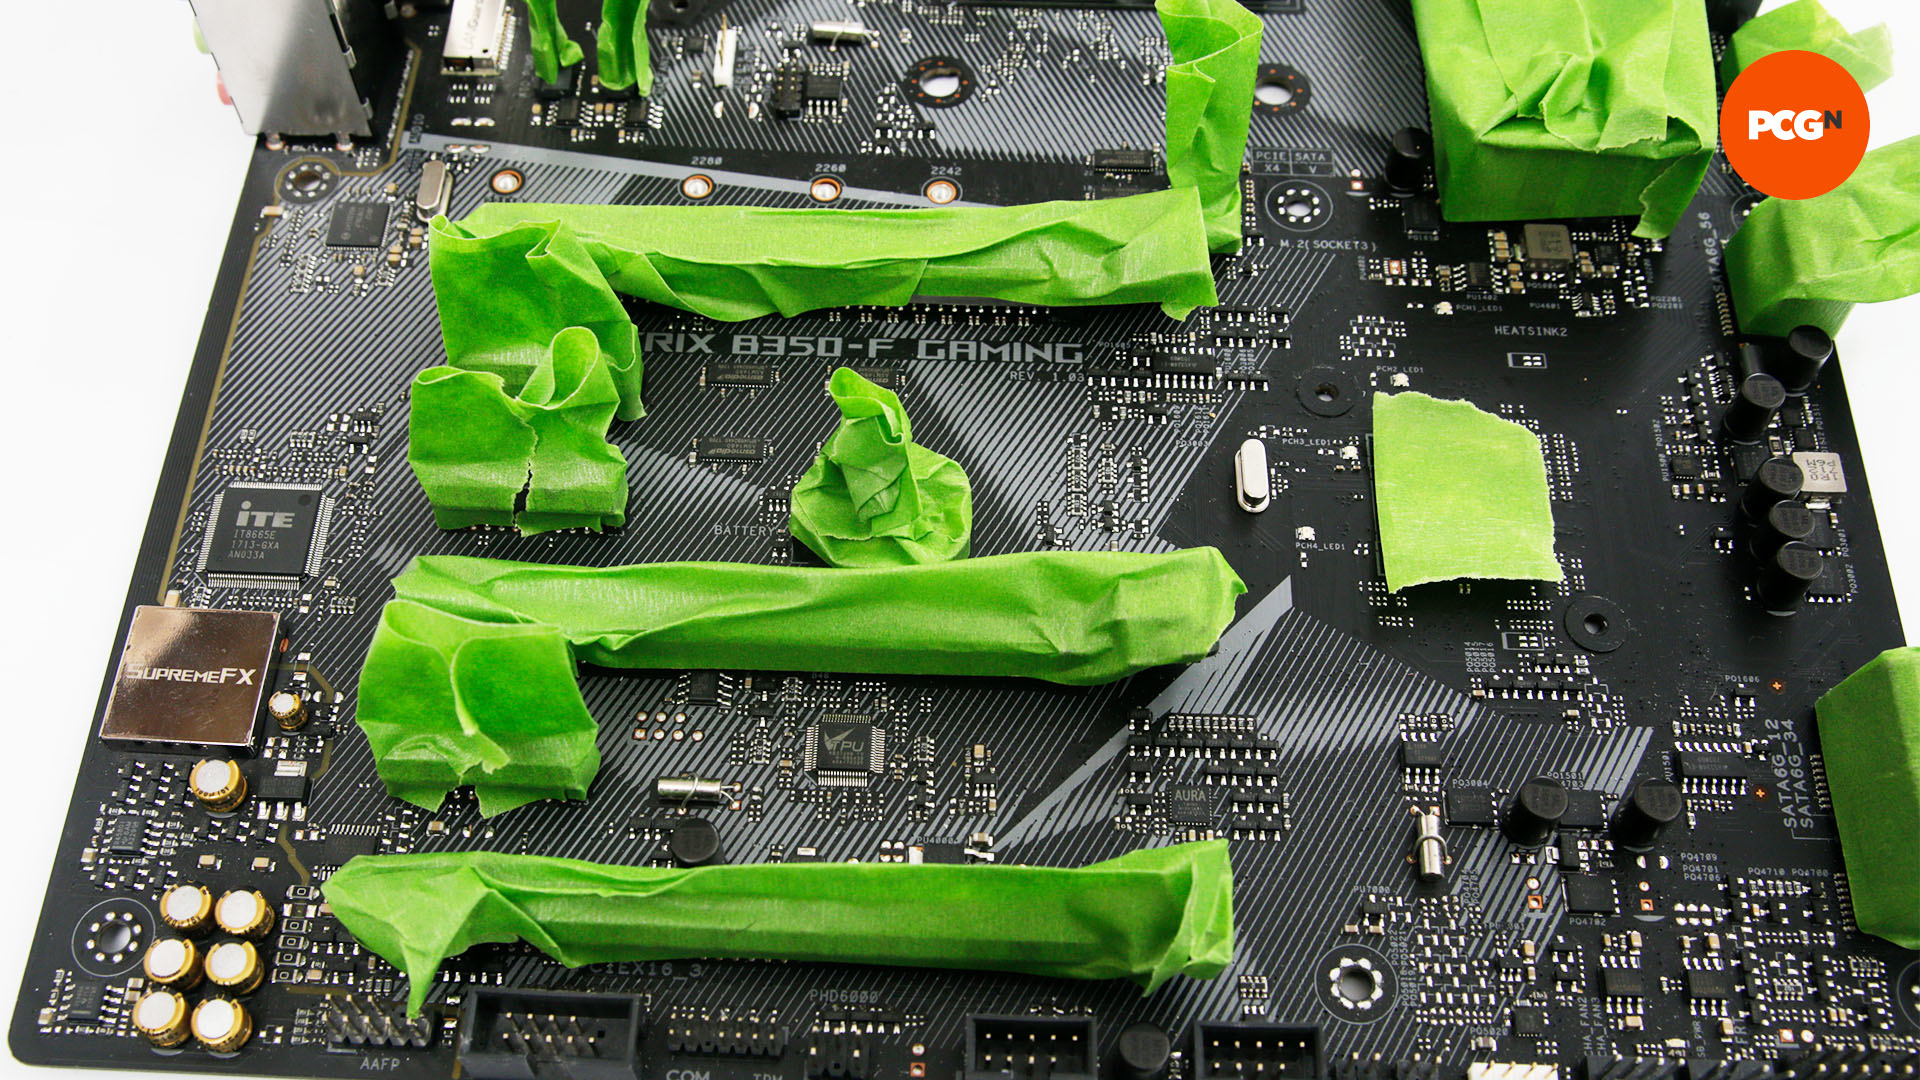 Les emplacements RAM sont recouverts de ruban adhésif grenouille afin que la carte puisse être peinte